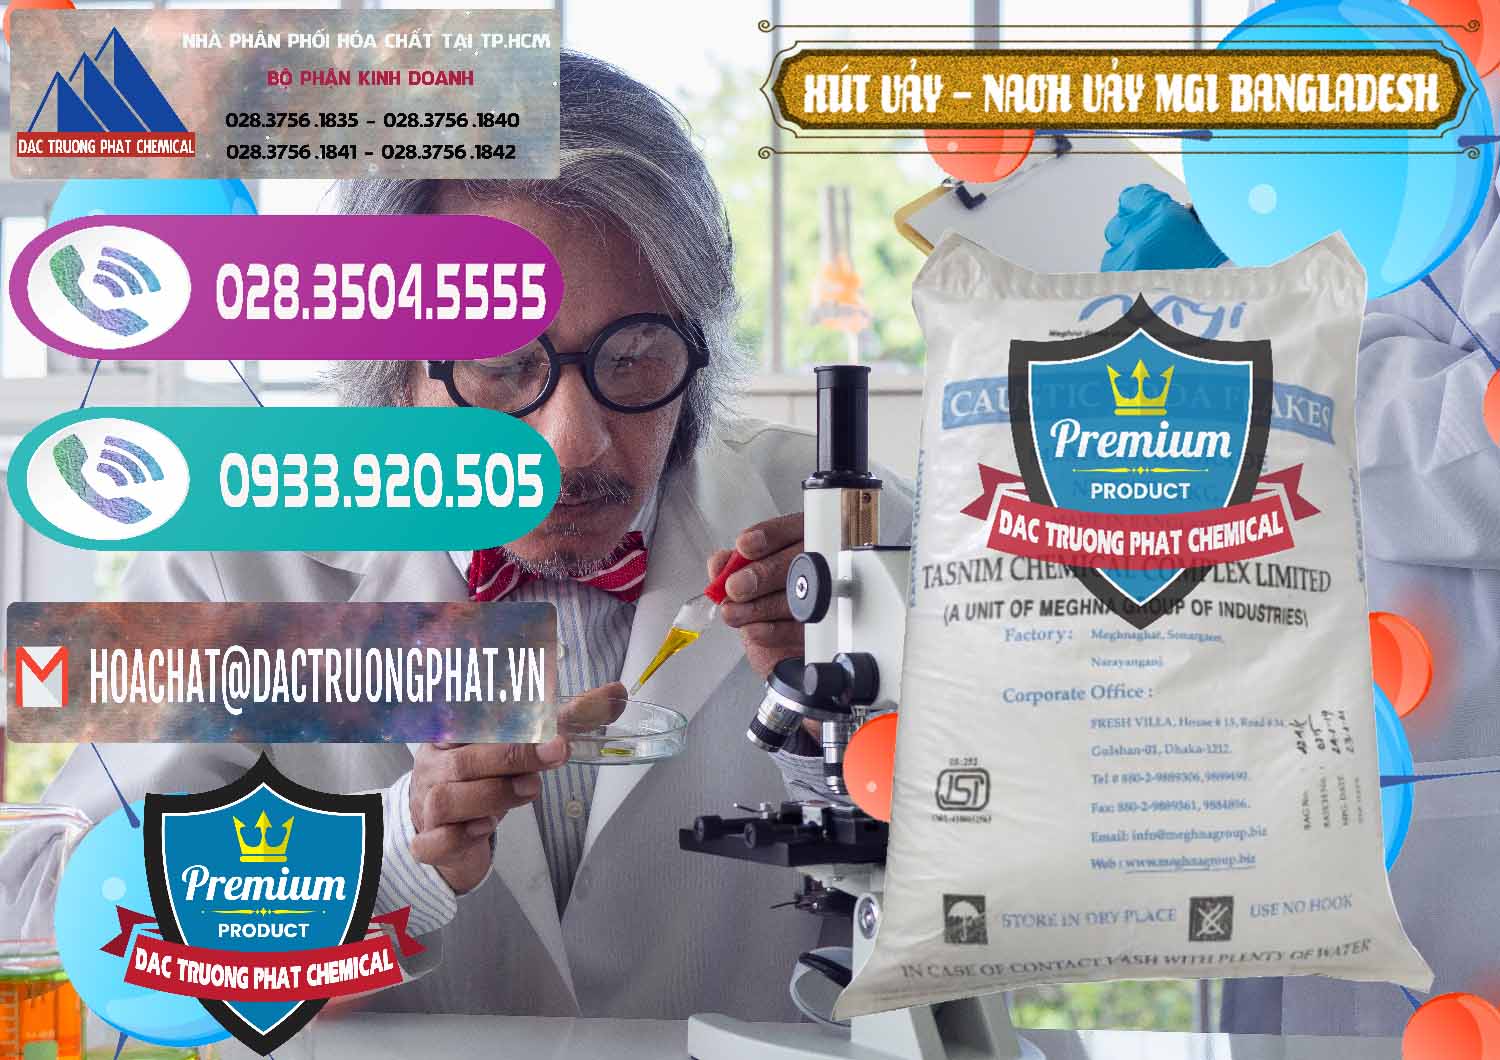 Chuyên kinh doanh và bán Xút Vảy - NaOH Vảy 99% MGI Bangladesh - 0274 - Kinh doanh _ phân phối hóa chất tại TP.HCM - hoachatxulynuoc.com